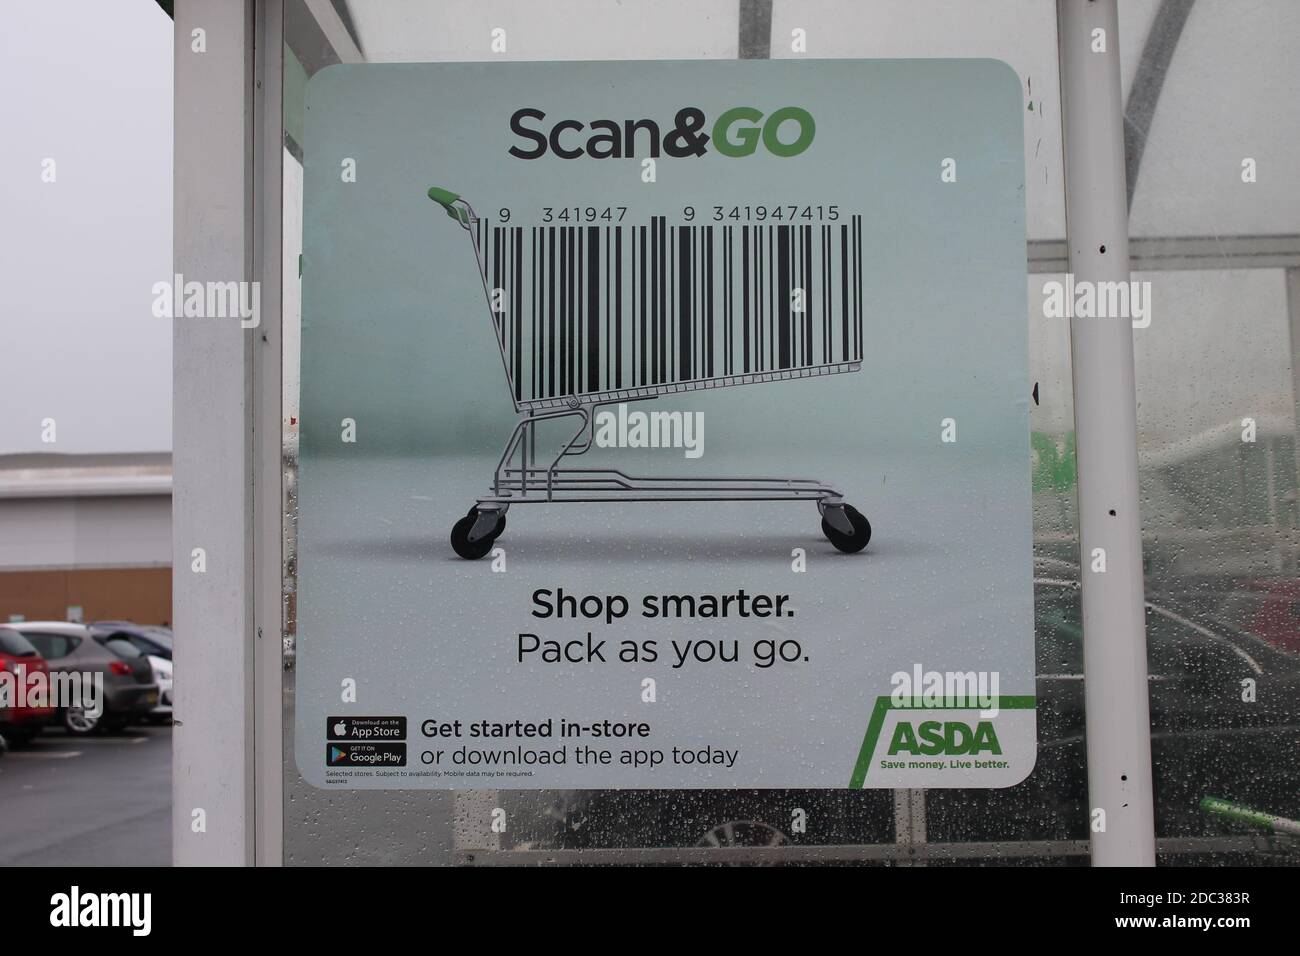 Escanea y compra de forma más inteligente, empaquete mientras vas firma con un código de barras de carrito de compras Foto de stock